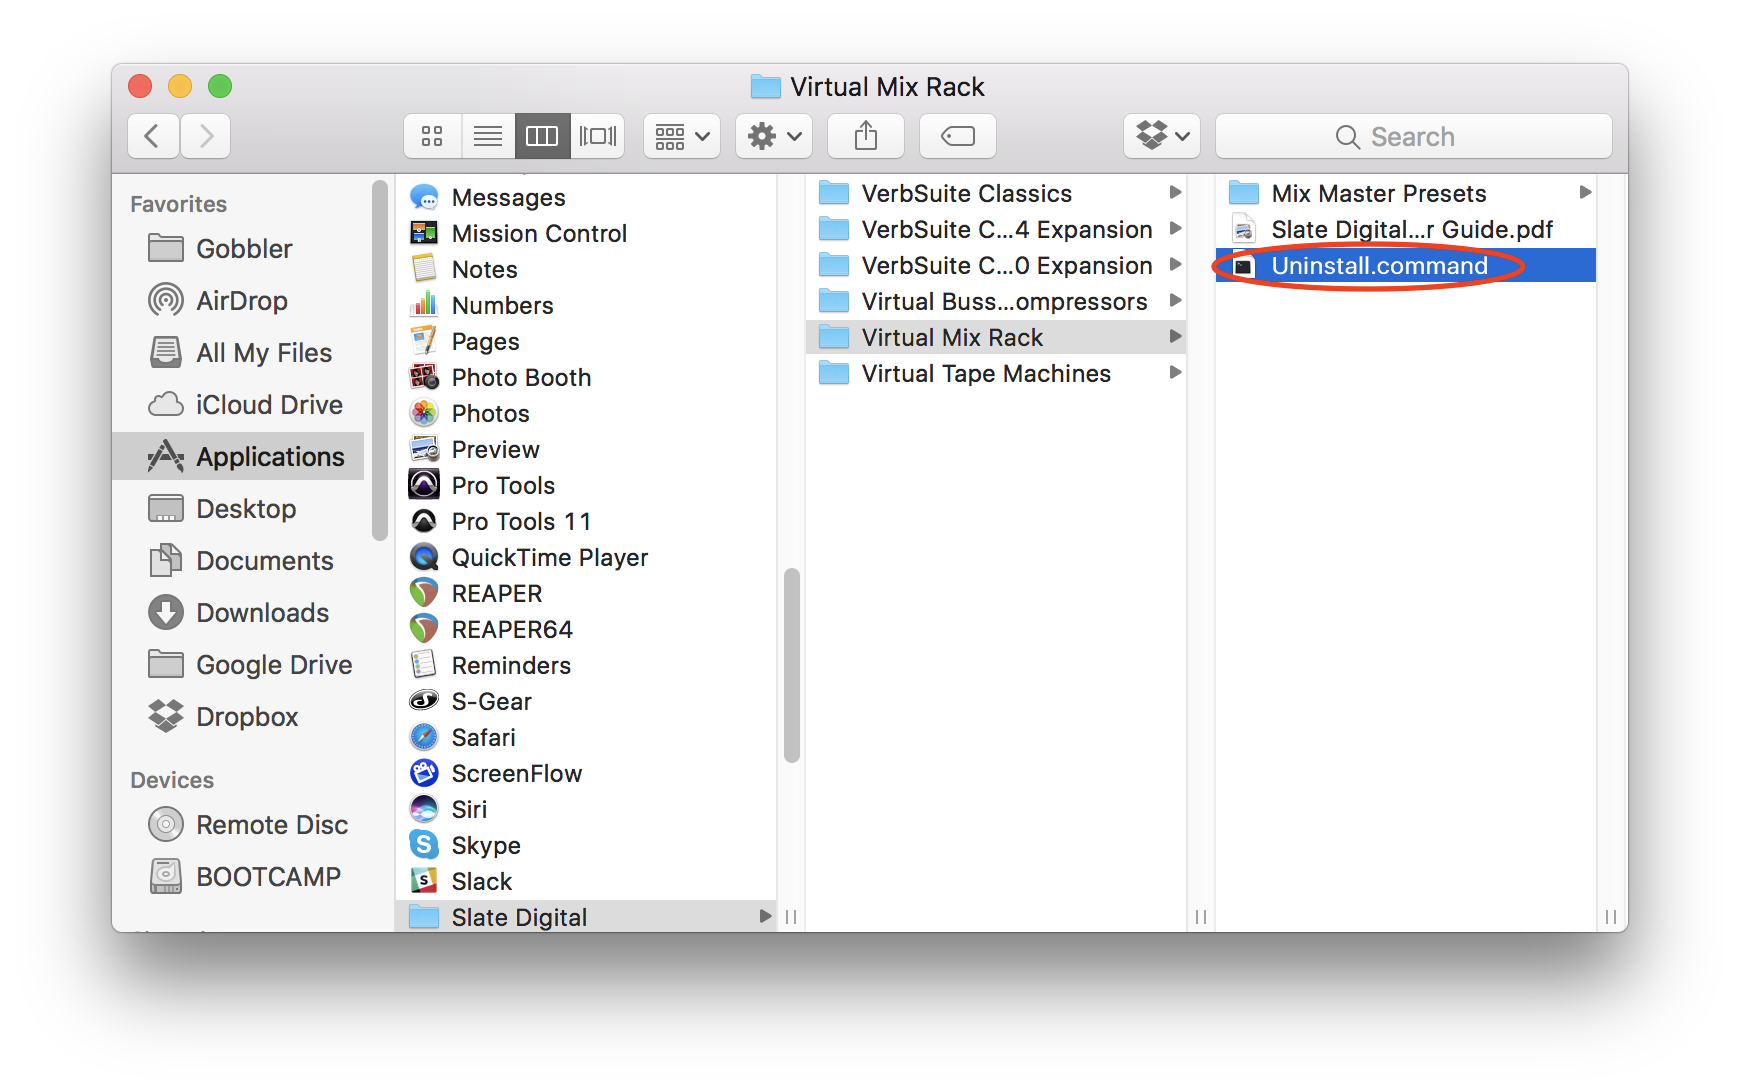 skype for mac plugins